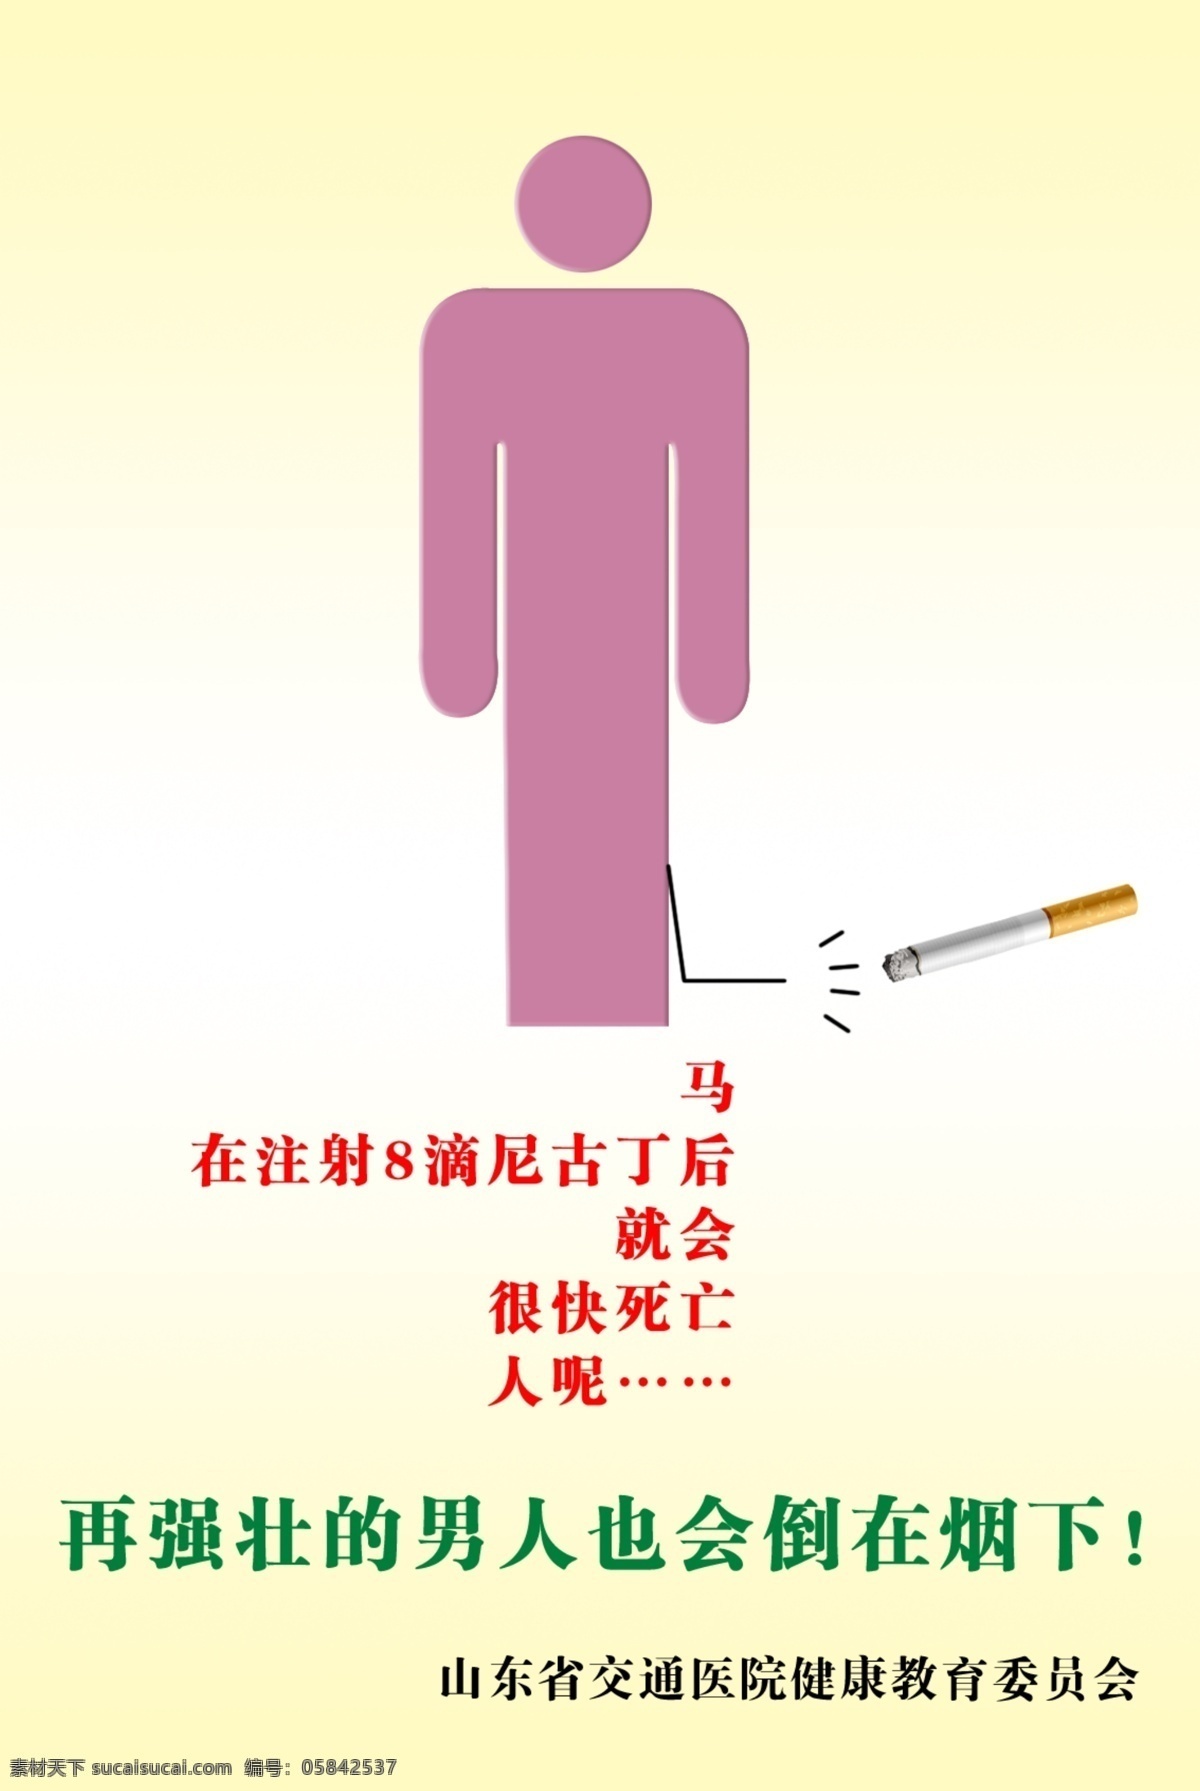 禁烟 海报 抽烟 广告设计模板 花纹 禁烟展板 吸烟 烟草 源文件 展板模板 烟卷 有害 宣传海报 宣传单 彩页 dm